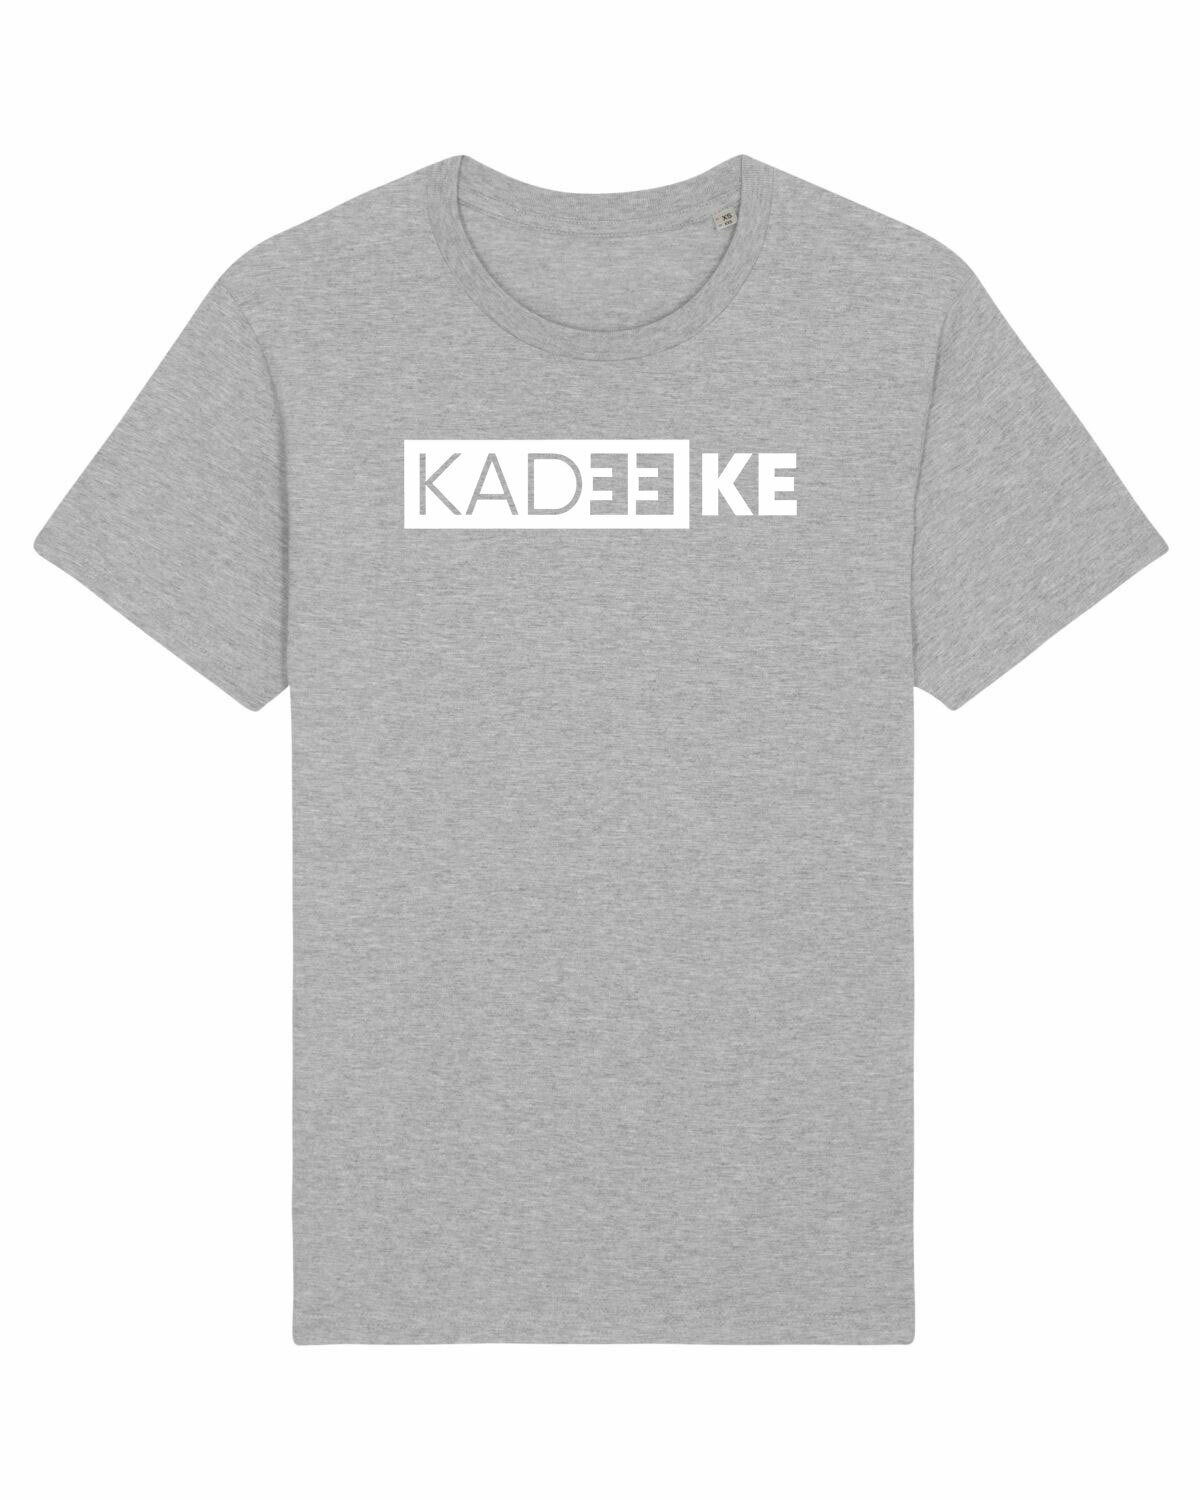 T-shirt Kadeeke